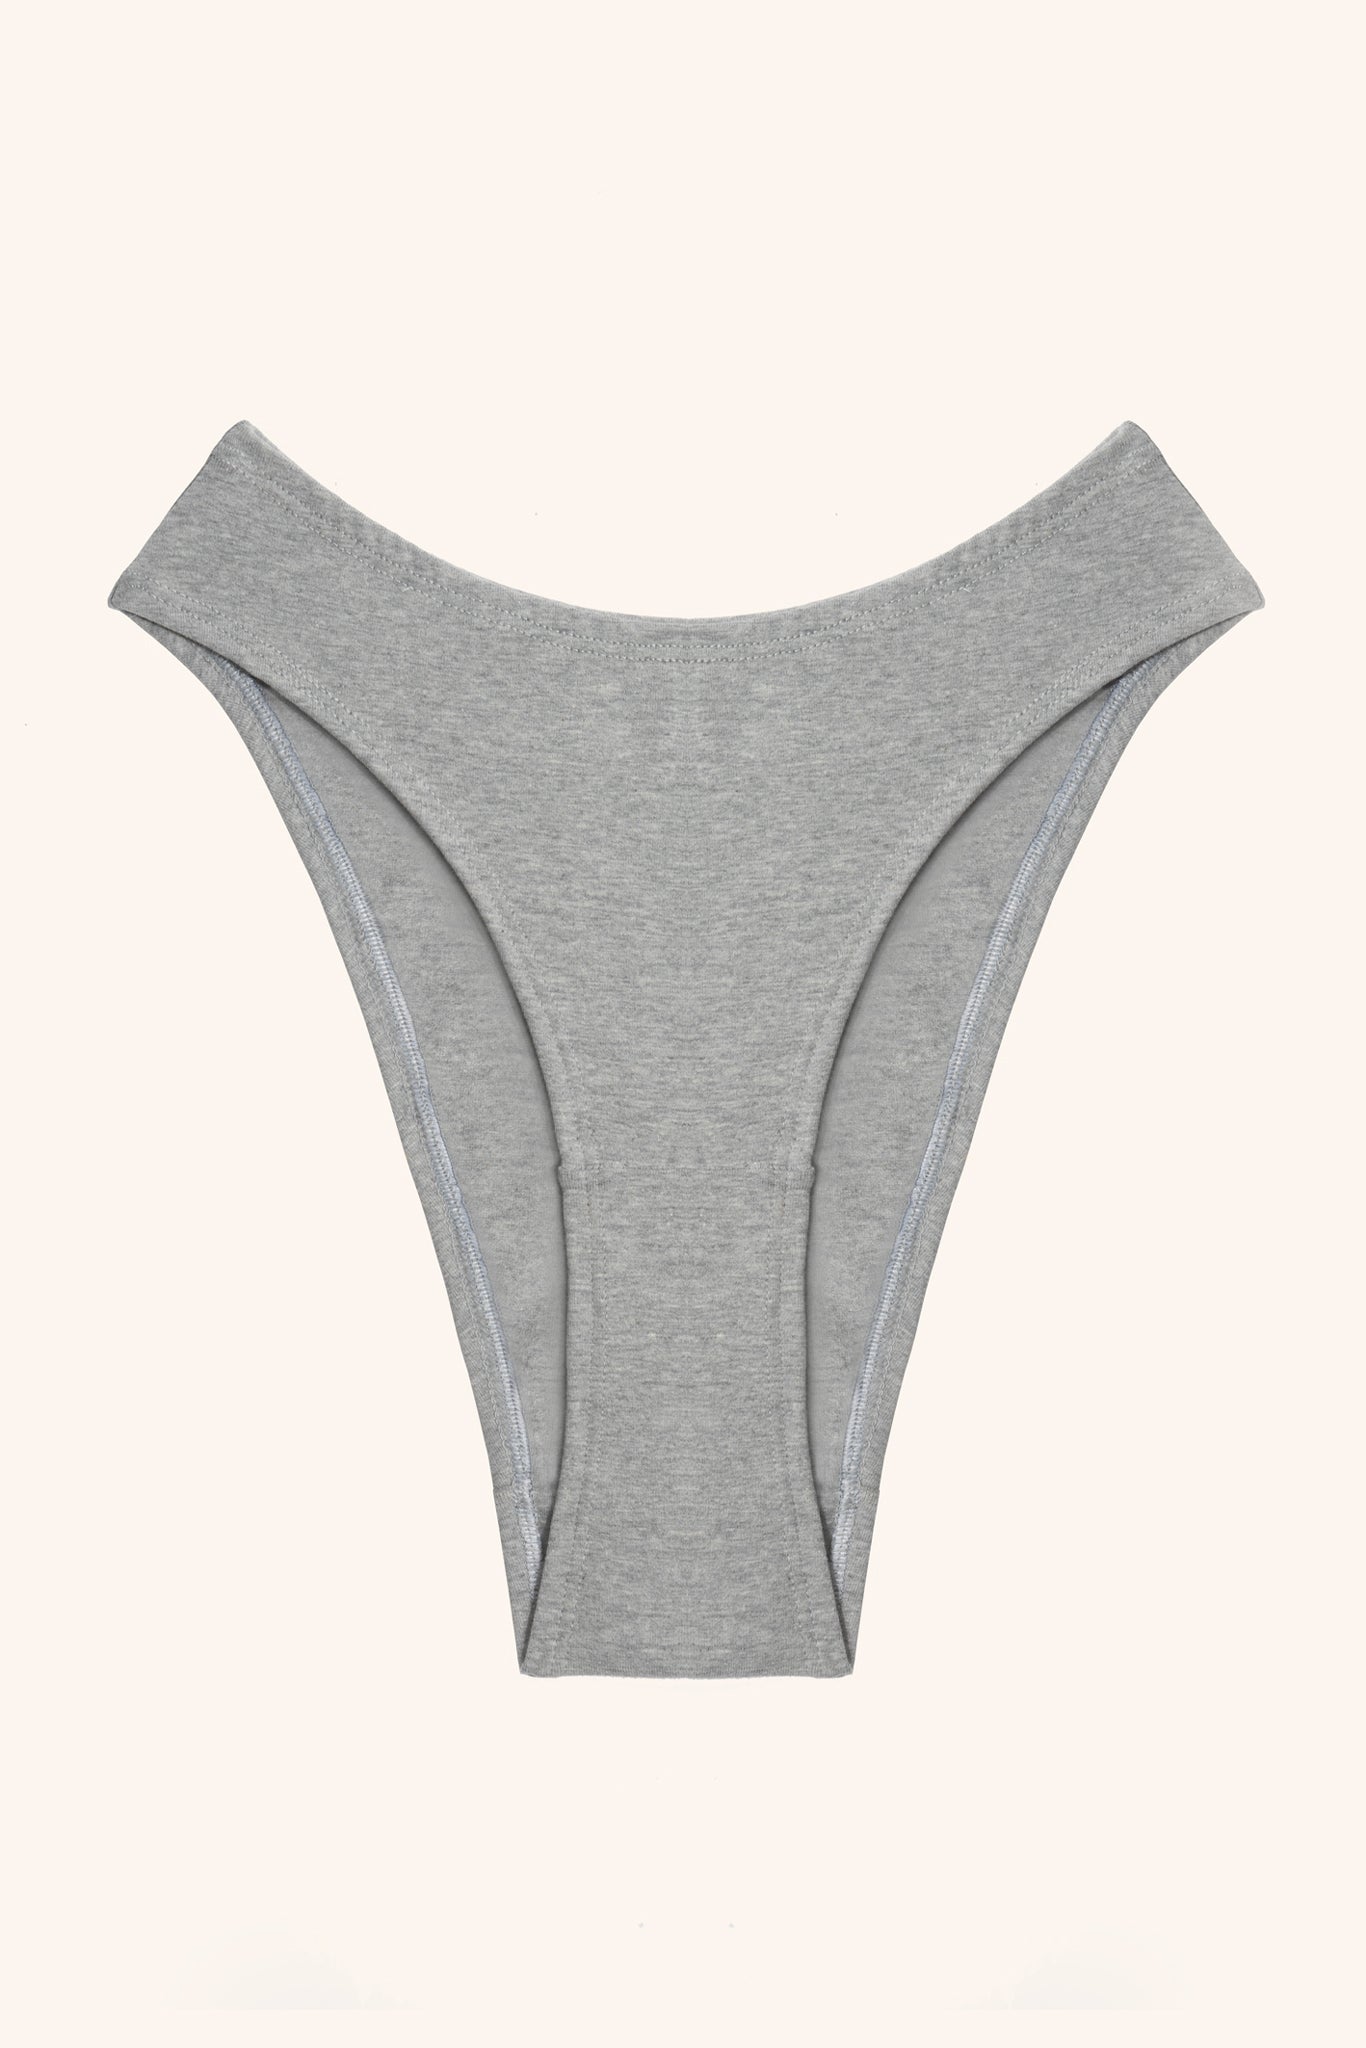 Val cotton high cut panties- grey